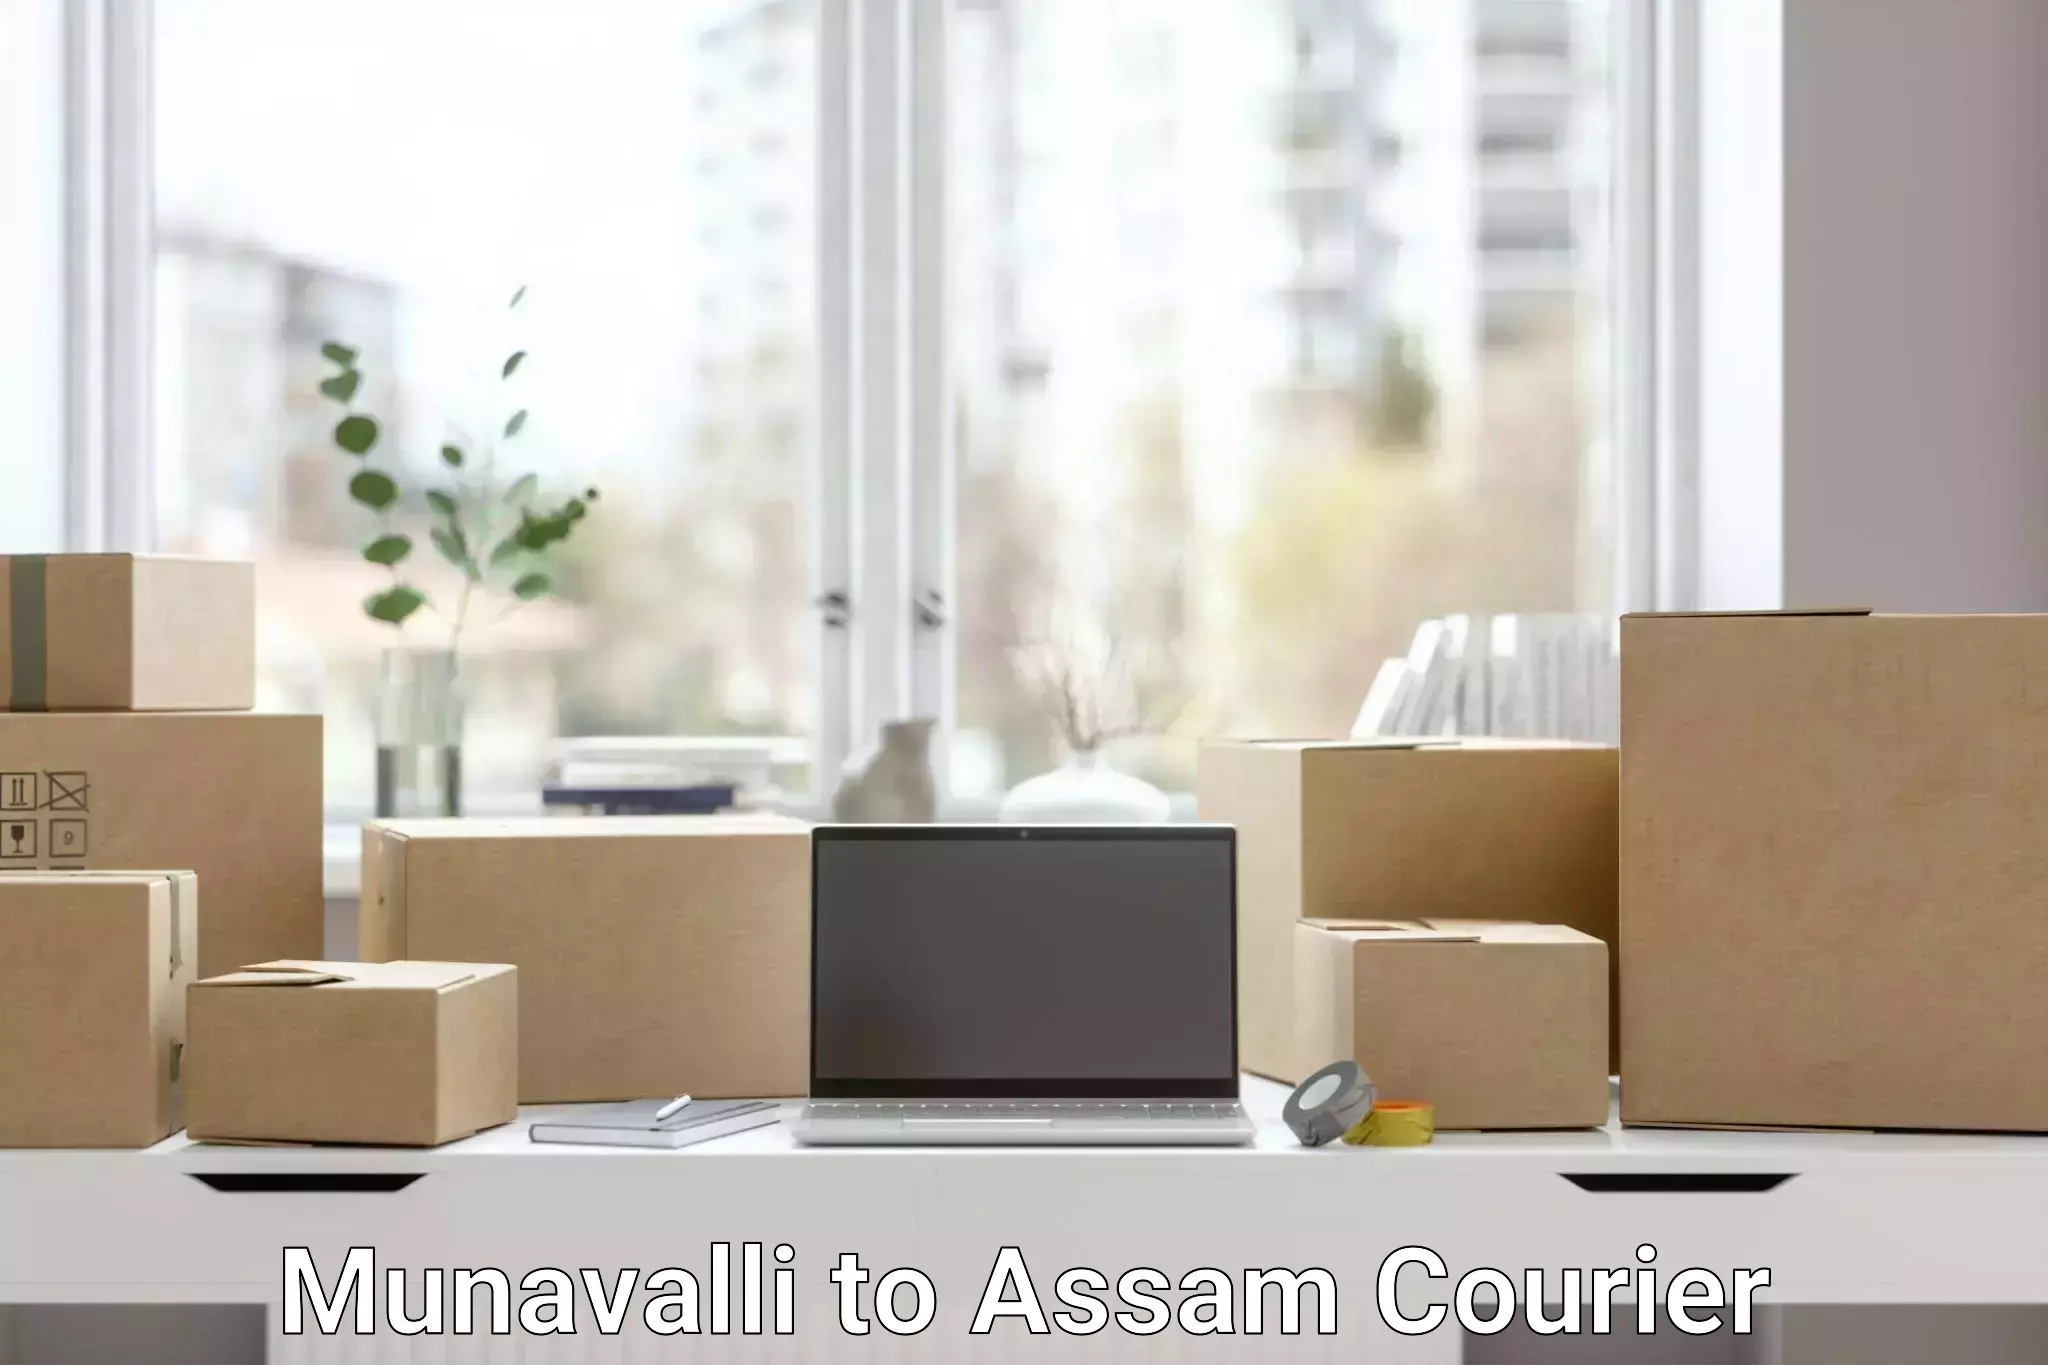 International courier networks Munavalli to Assam